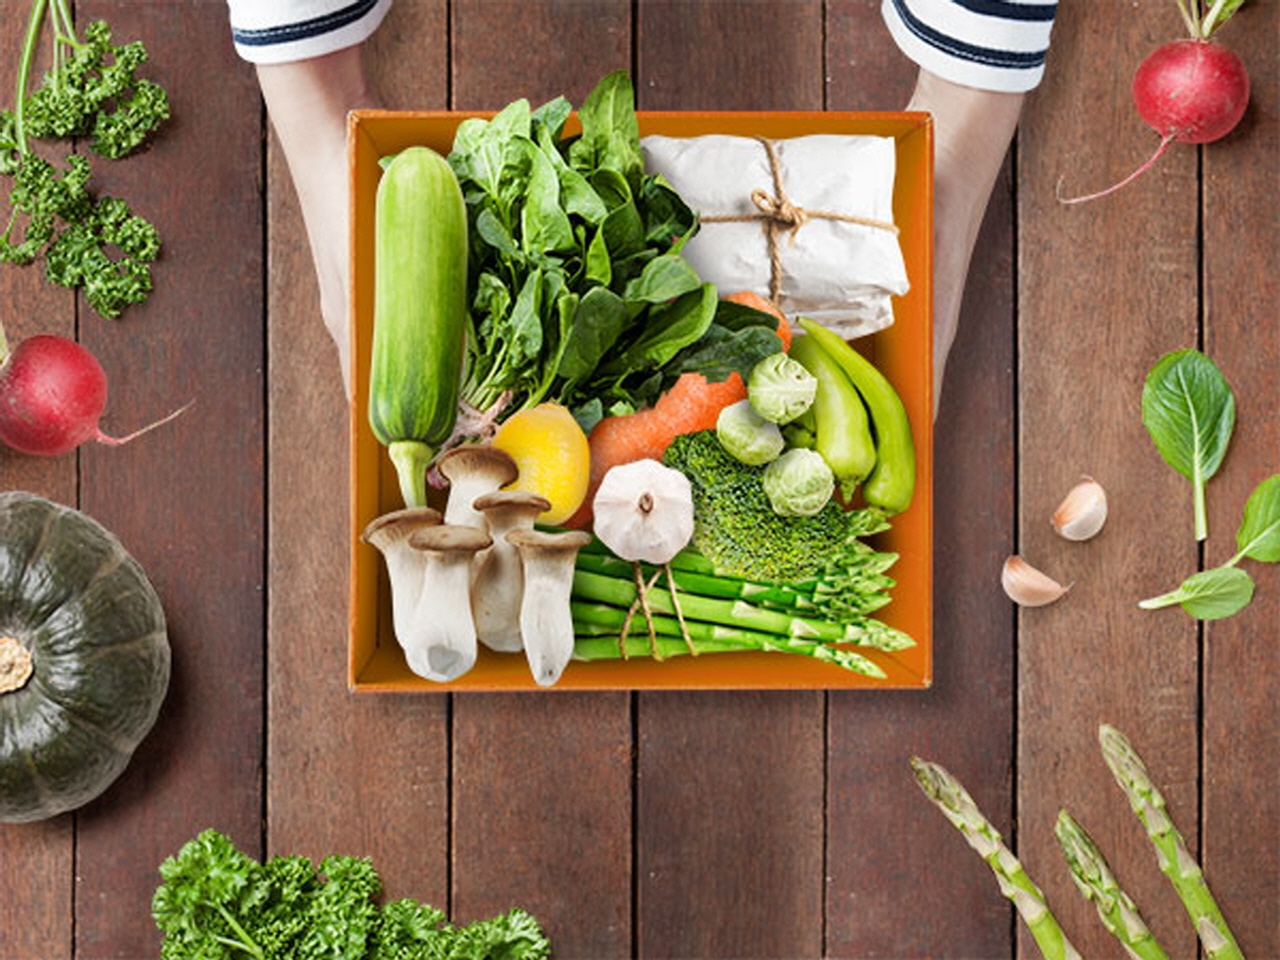 간편하고 신선한 식재료인 밀키트 섭취 시 영양과 비만방지를 위해서는 야채 샐러드를 함께 섭취하는 것이 바람직하다.사진=365mc